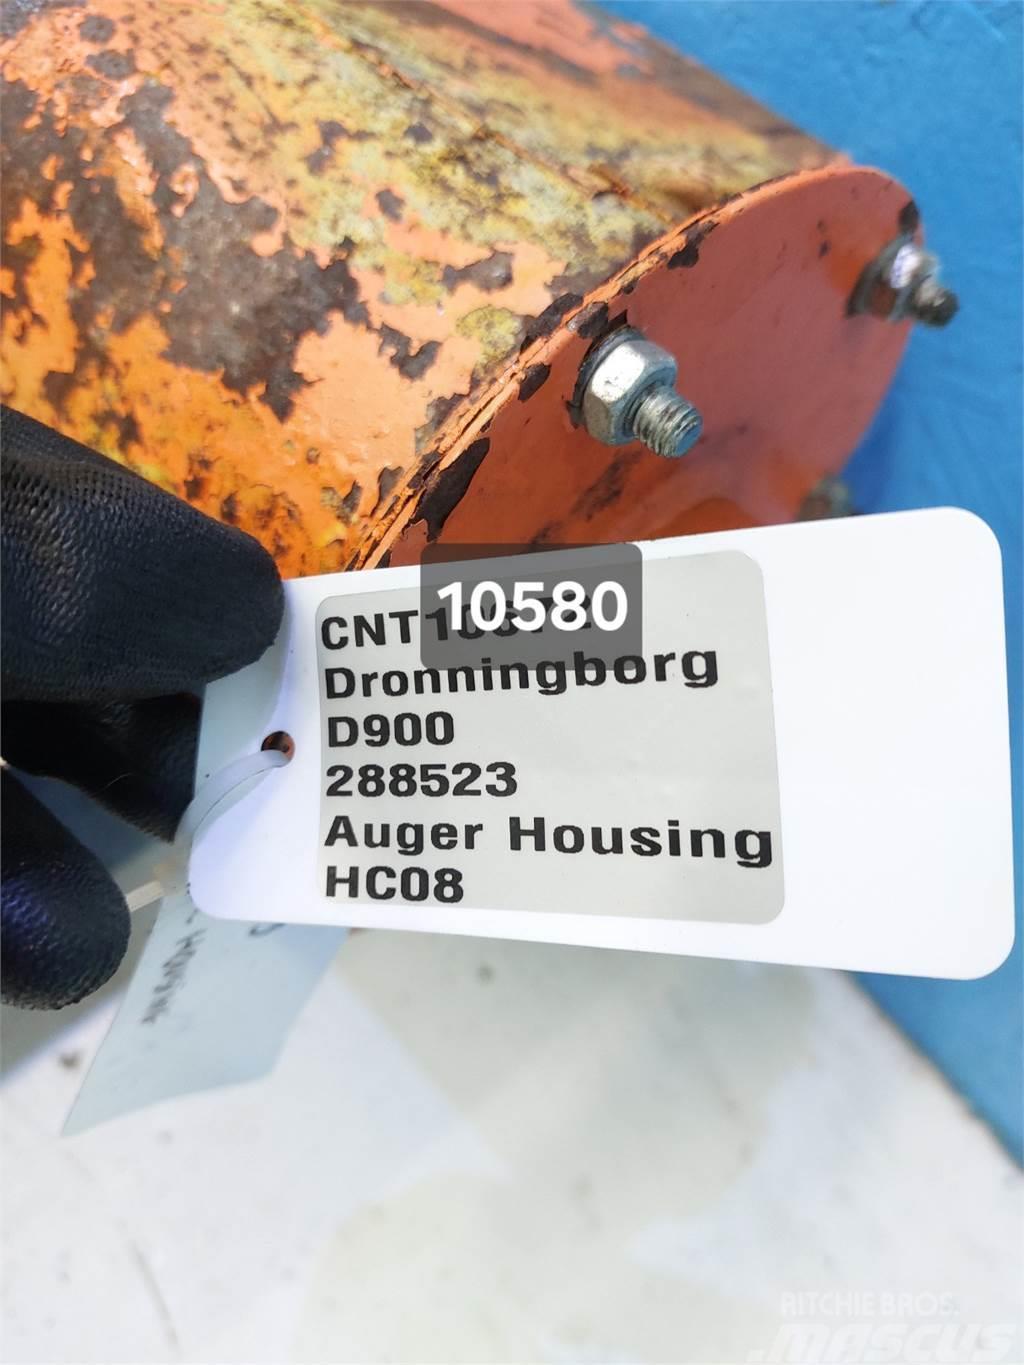 Dronningborg D900 Accessori per mietitrebbiatrici